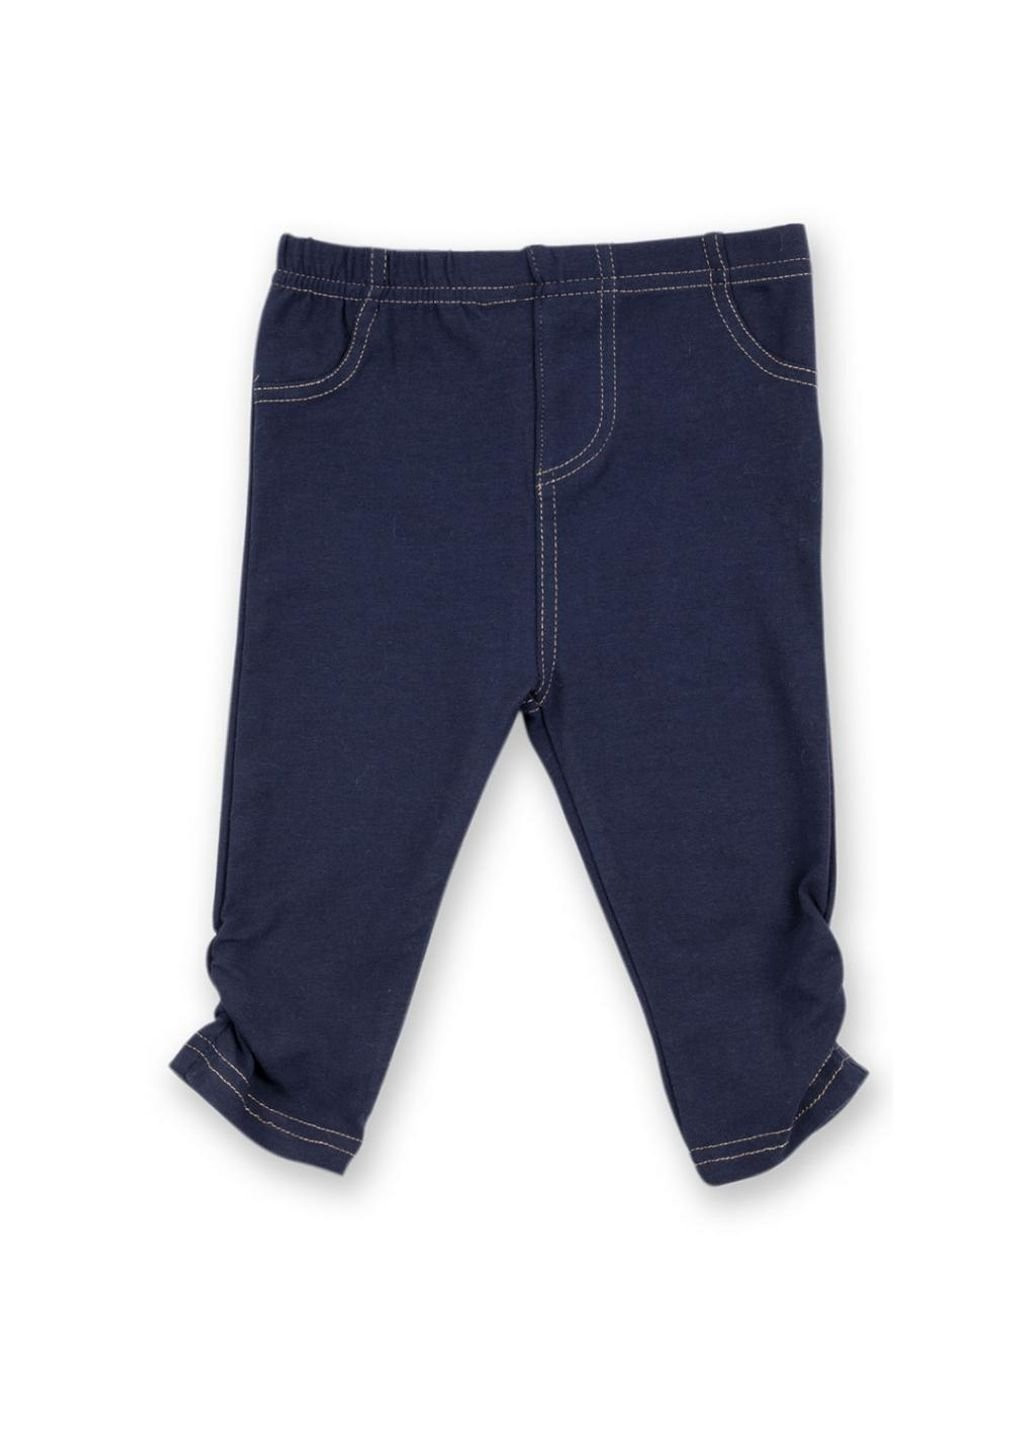 Синий демисезонный набор детской одежды для девочек: кофточка, штанишки и меховая жилетка (g8234.r.9-12) Luvena Fortuna